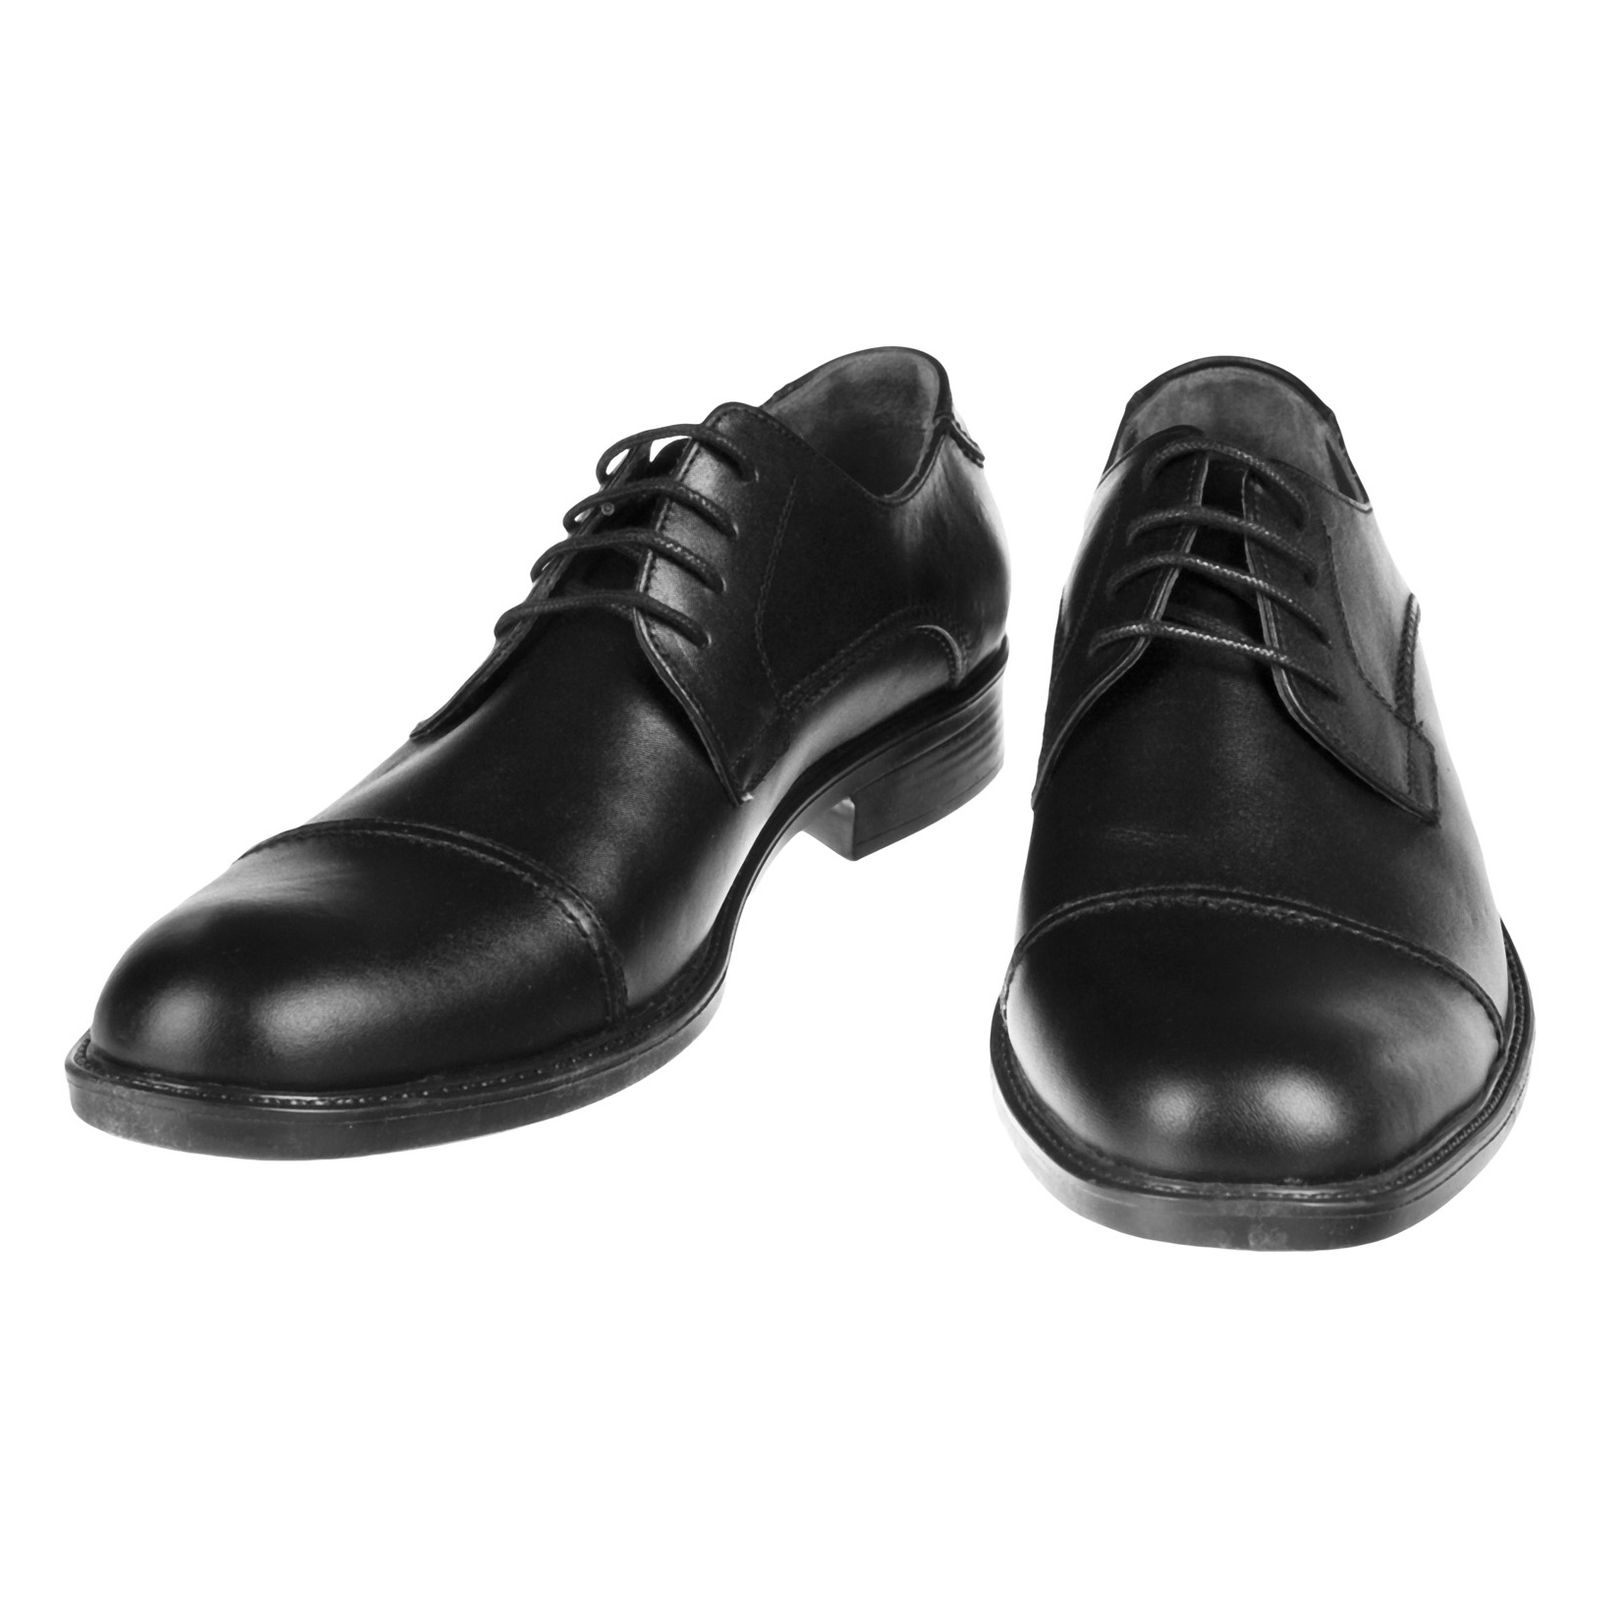 کفش مردانه دلفارد مدل 7219c503-101 - مشکی - 4